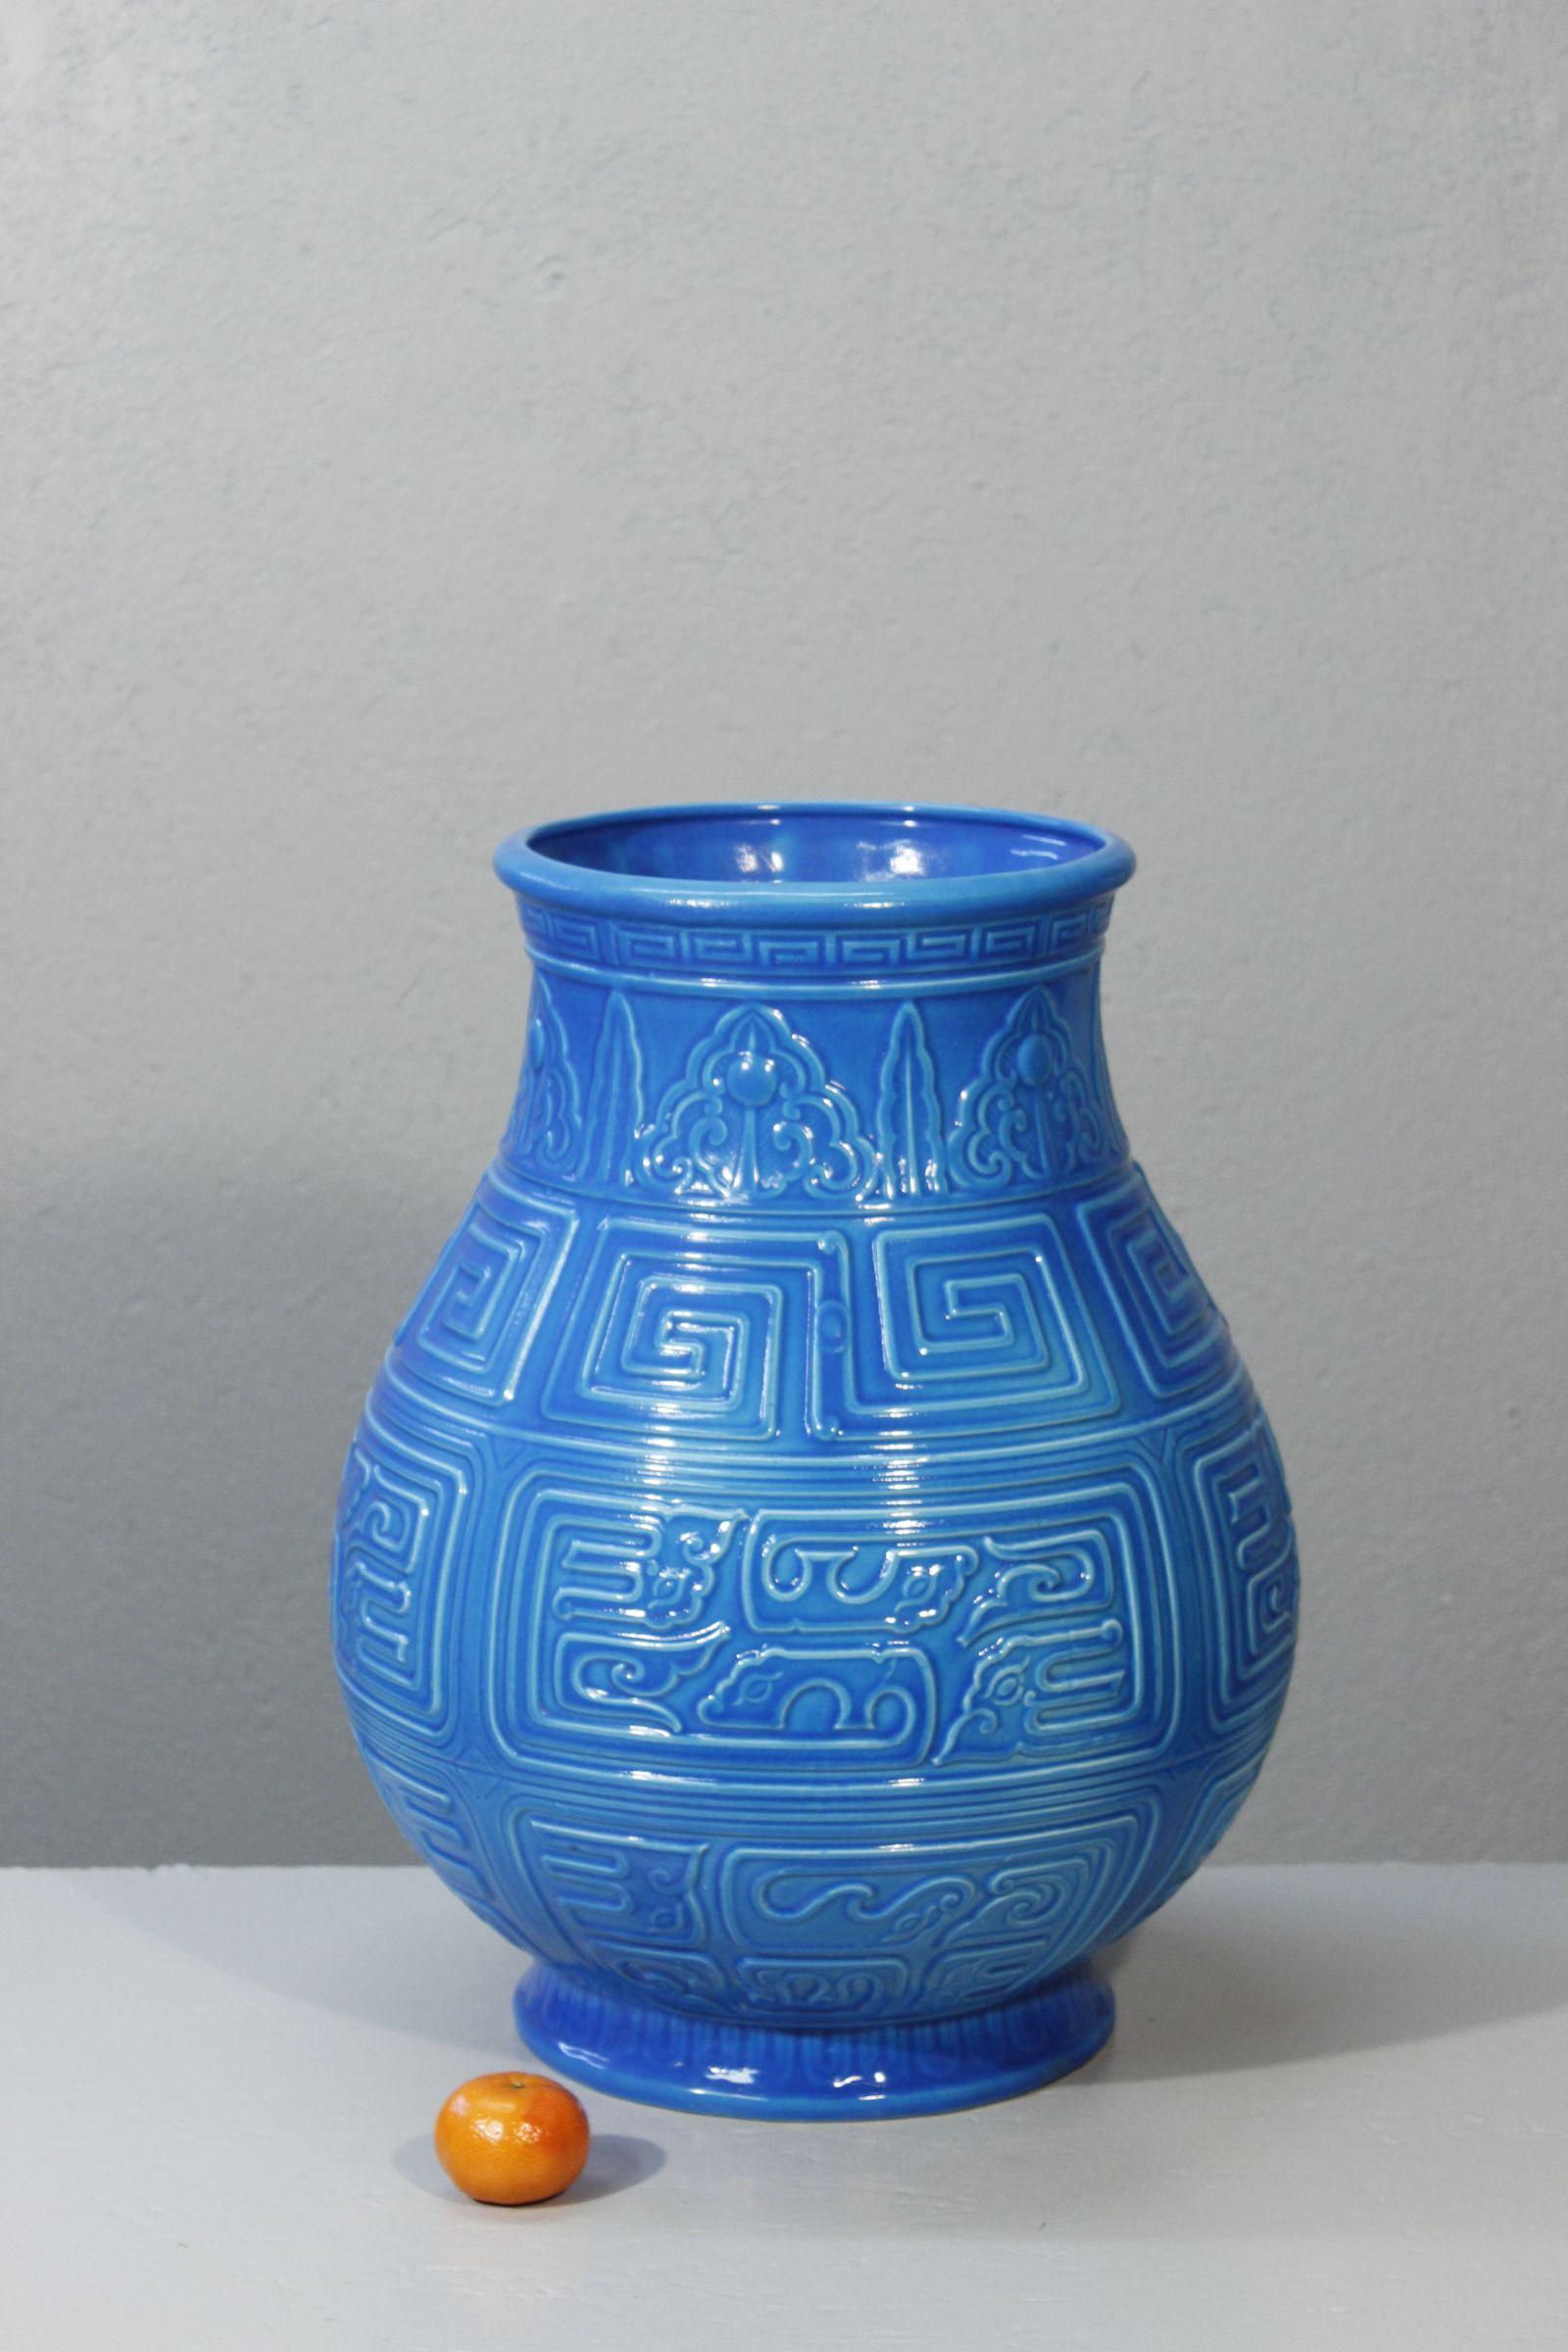 Imposant vase Longwy de la série Majolica, produite de la fin du XIXe au début du XXe siècle, notamment dans les ateliers de Primavera. 

Ce modèle particulier est réalisé dans un bleu turquoise profond, coulé d'après un bronze chinois ancien. 

En